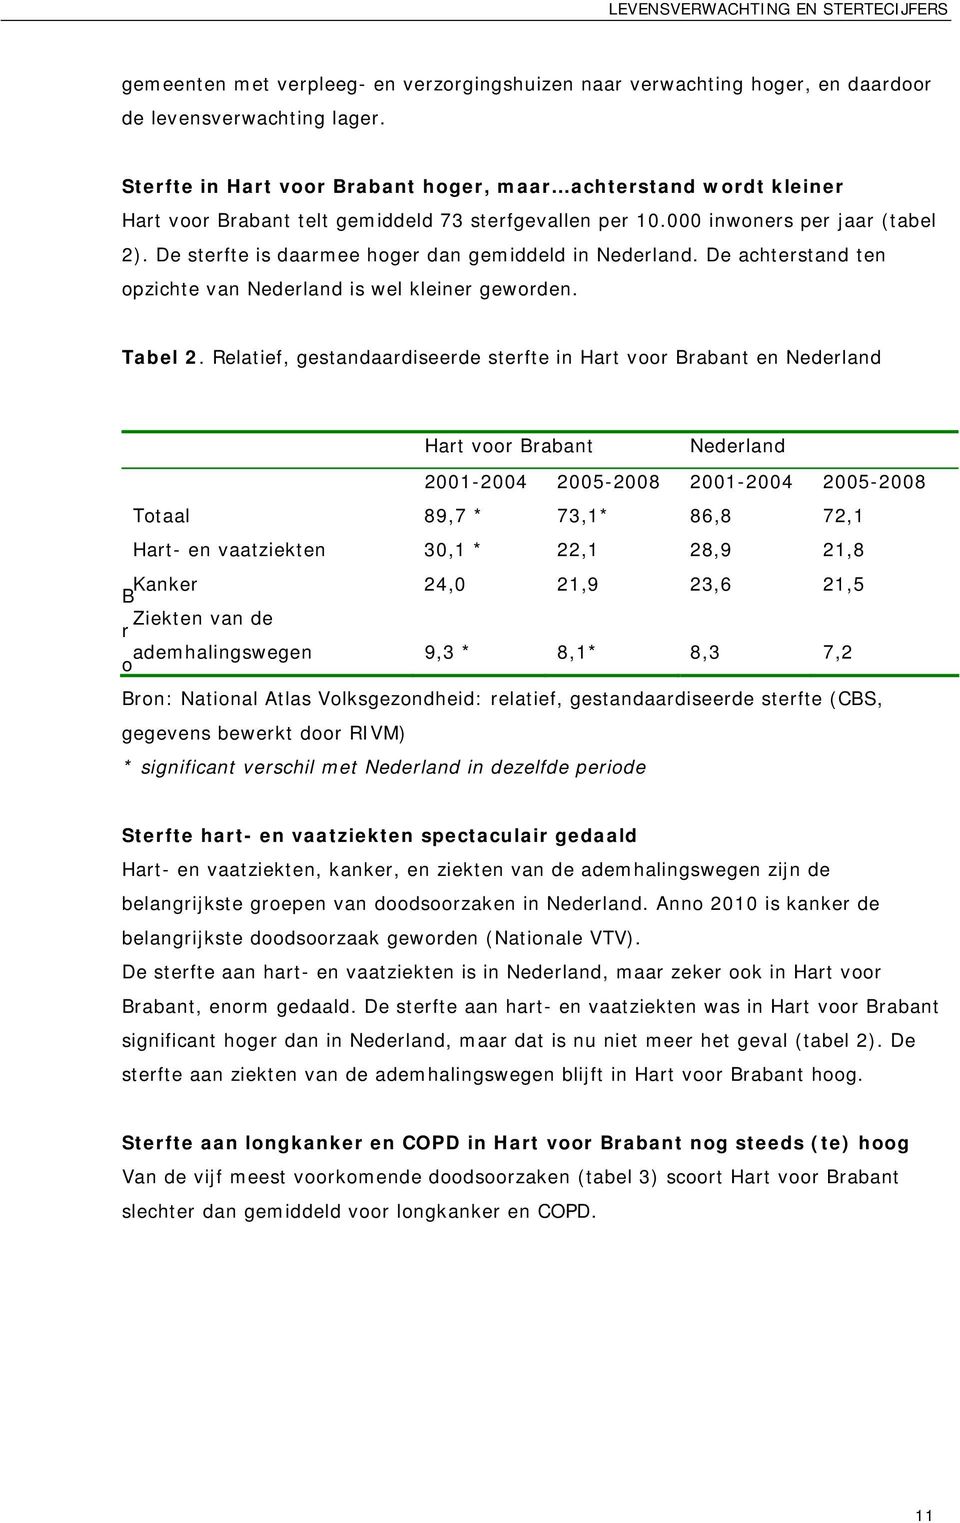 De sterfte is daarmee hoger dan gemiddeld in Nederland. De achterstand ten opzichte van Nederland is wel kleiner geworden. Tabel 2.